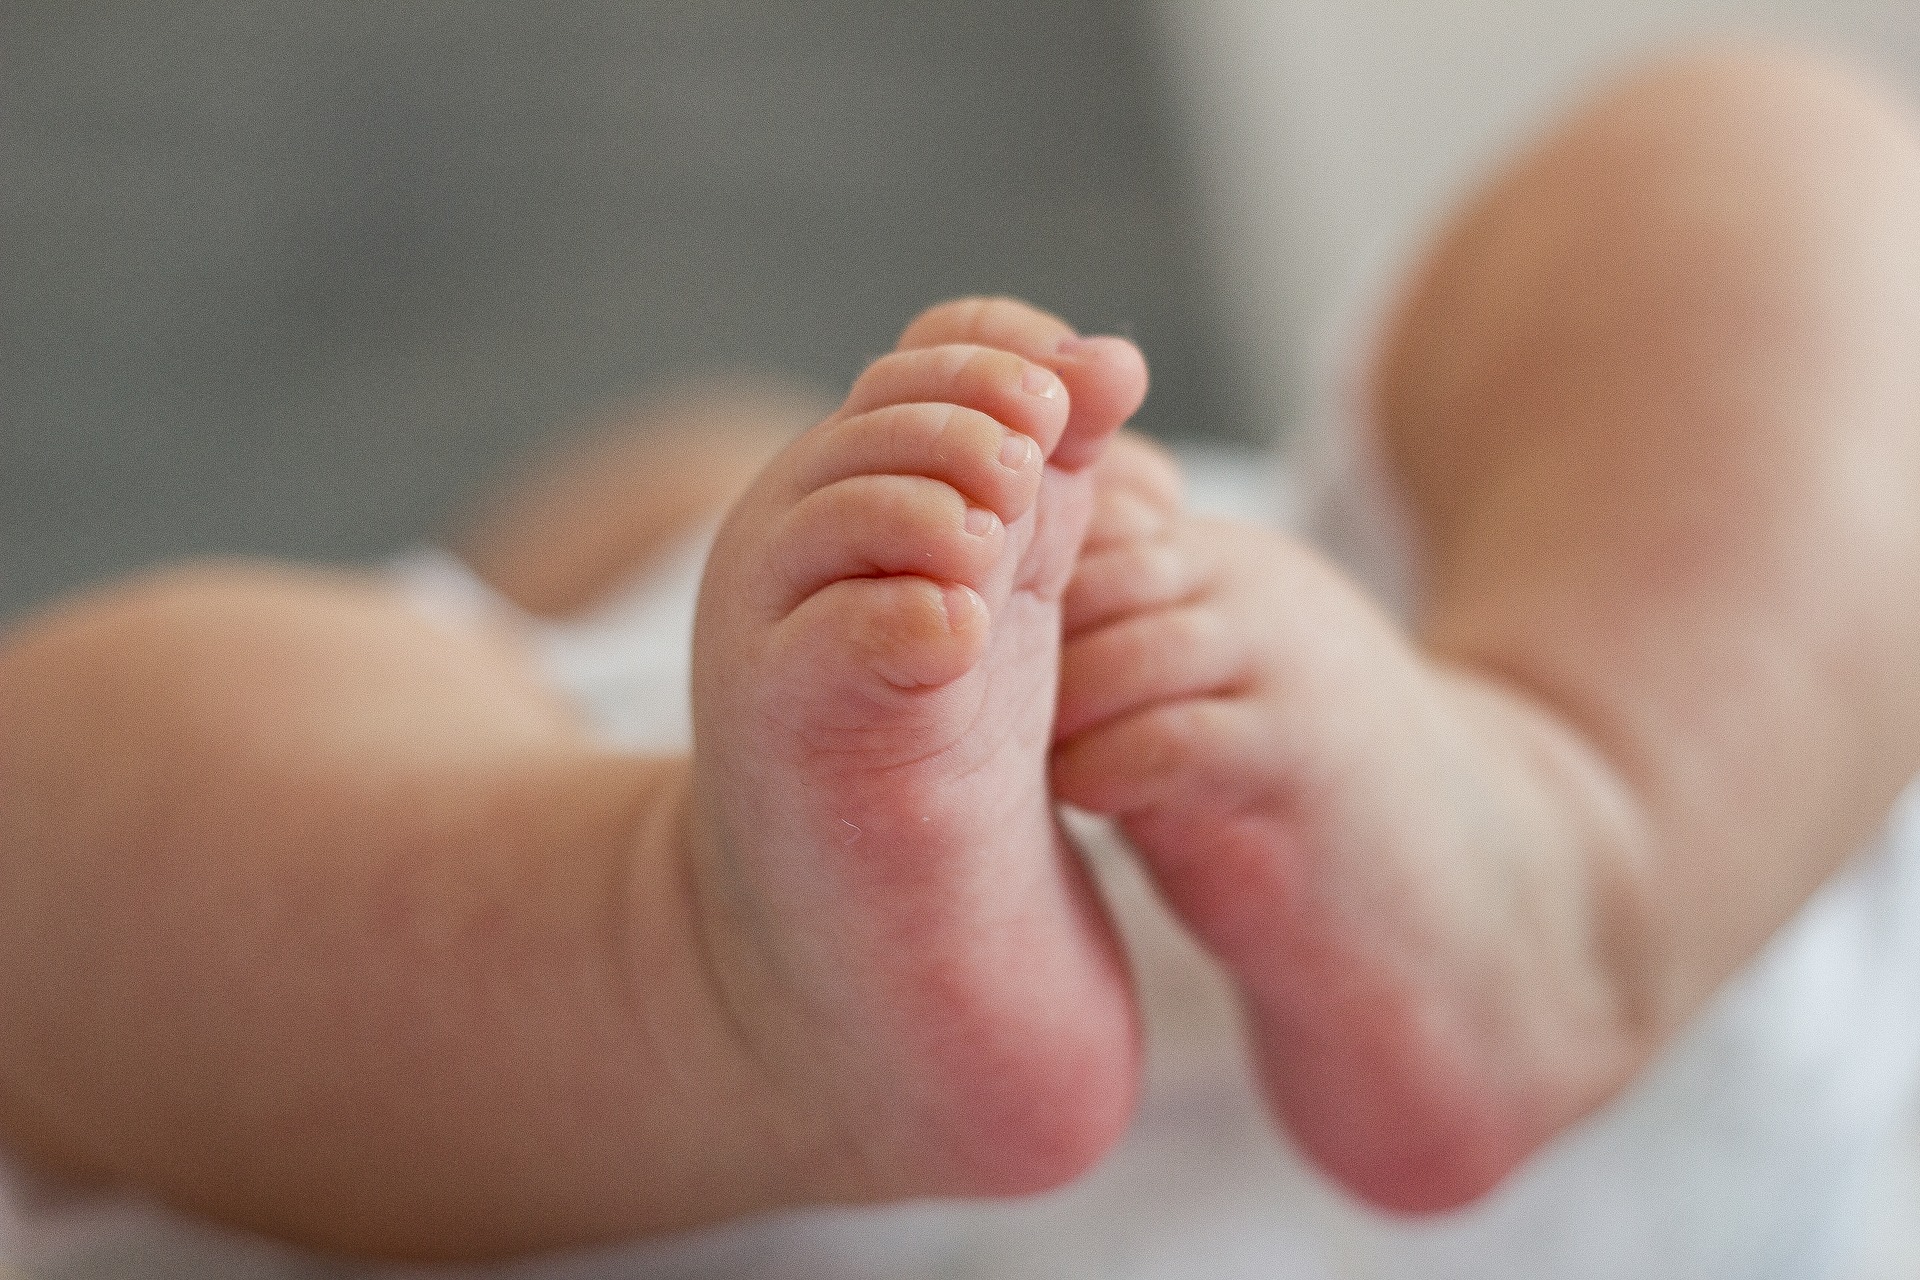 Geburtenrate sinkt in den ersten zwei Monaten, Todesfälle steigen